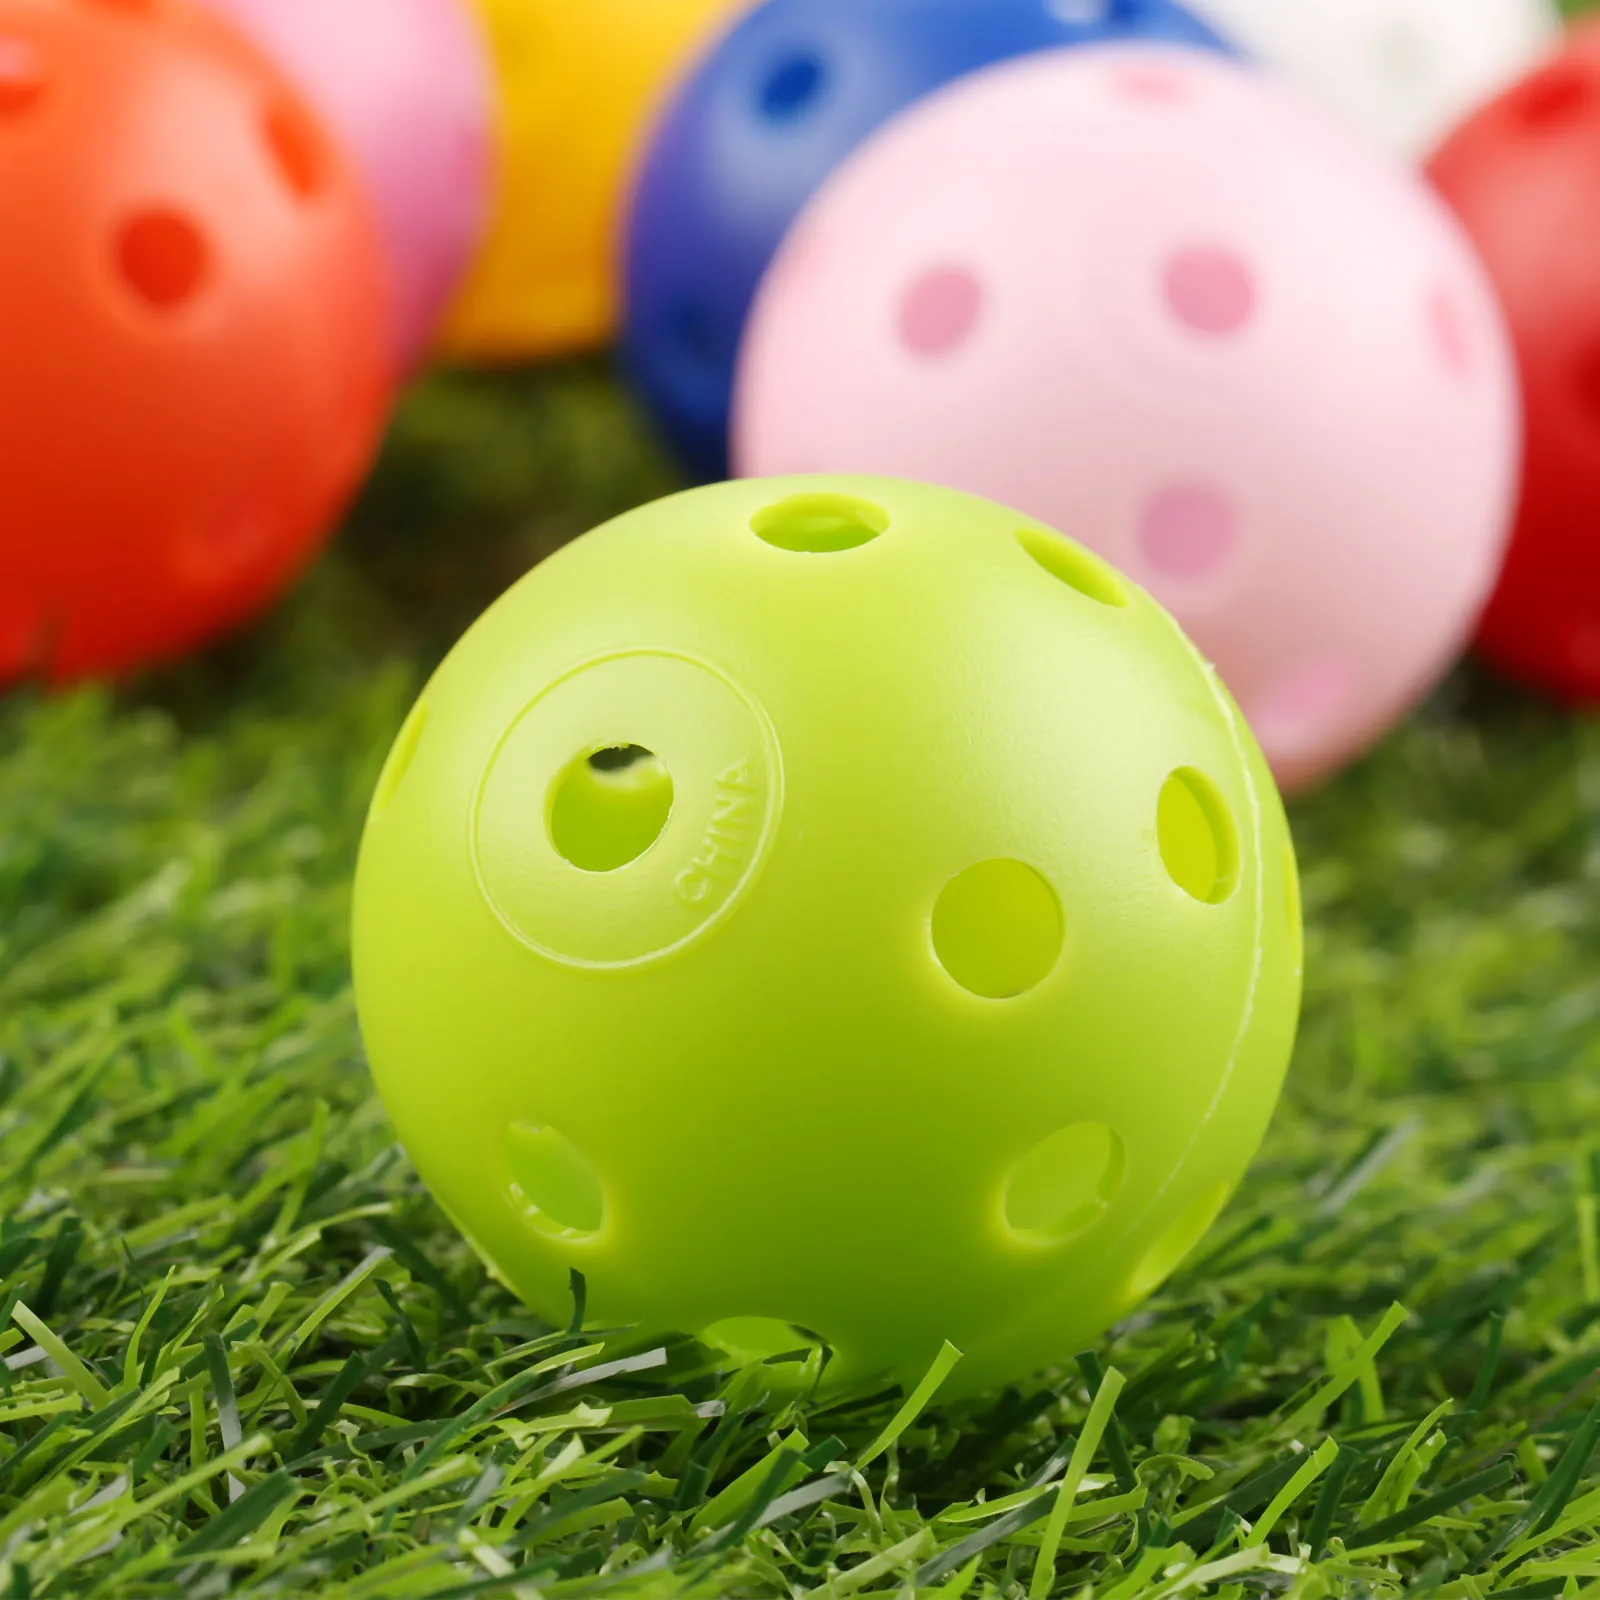 Gohantee 10 шт. 41 мм мячи для тренировки гольфа пластиковые воздушные шары полые с отверстием для гольфа наружные мячи для игры в гольф аксессуары для гольфа